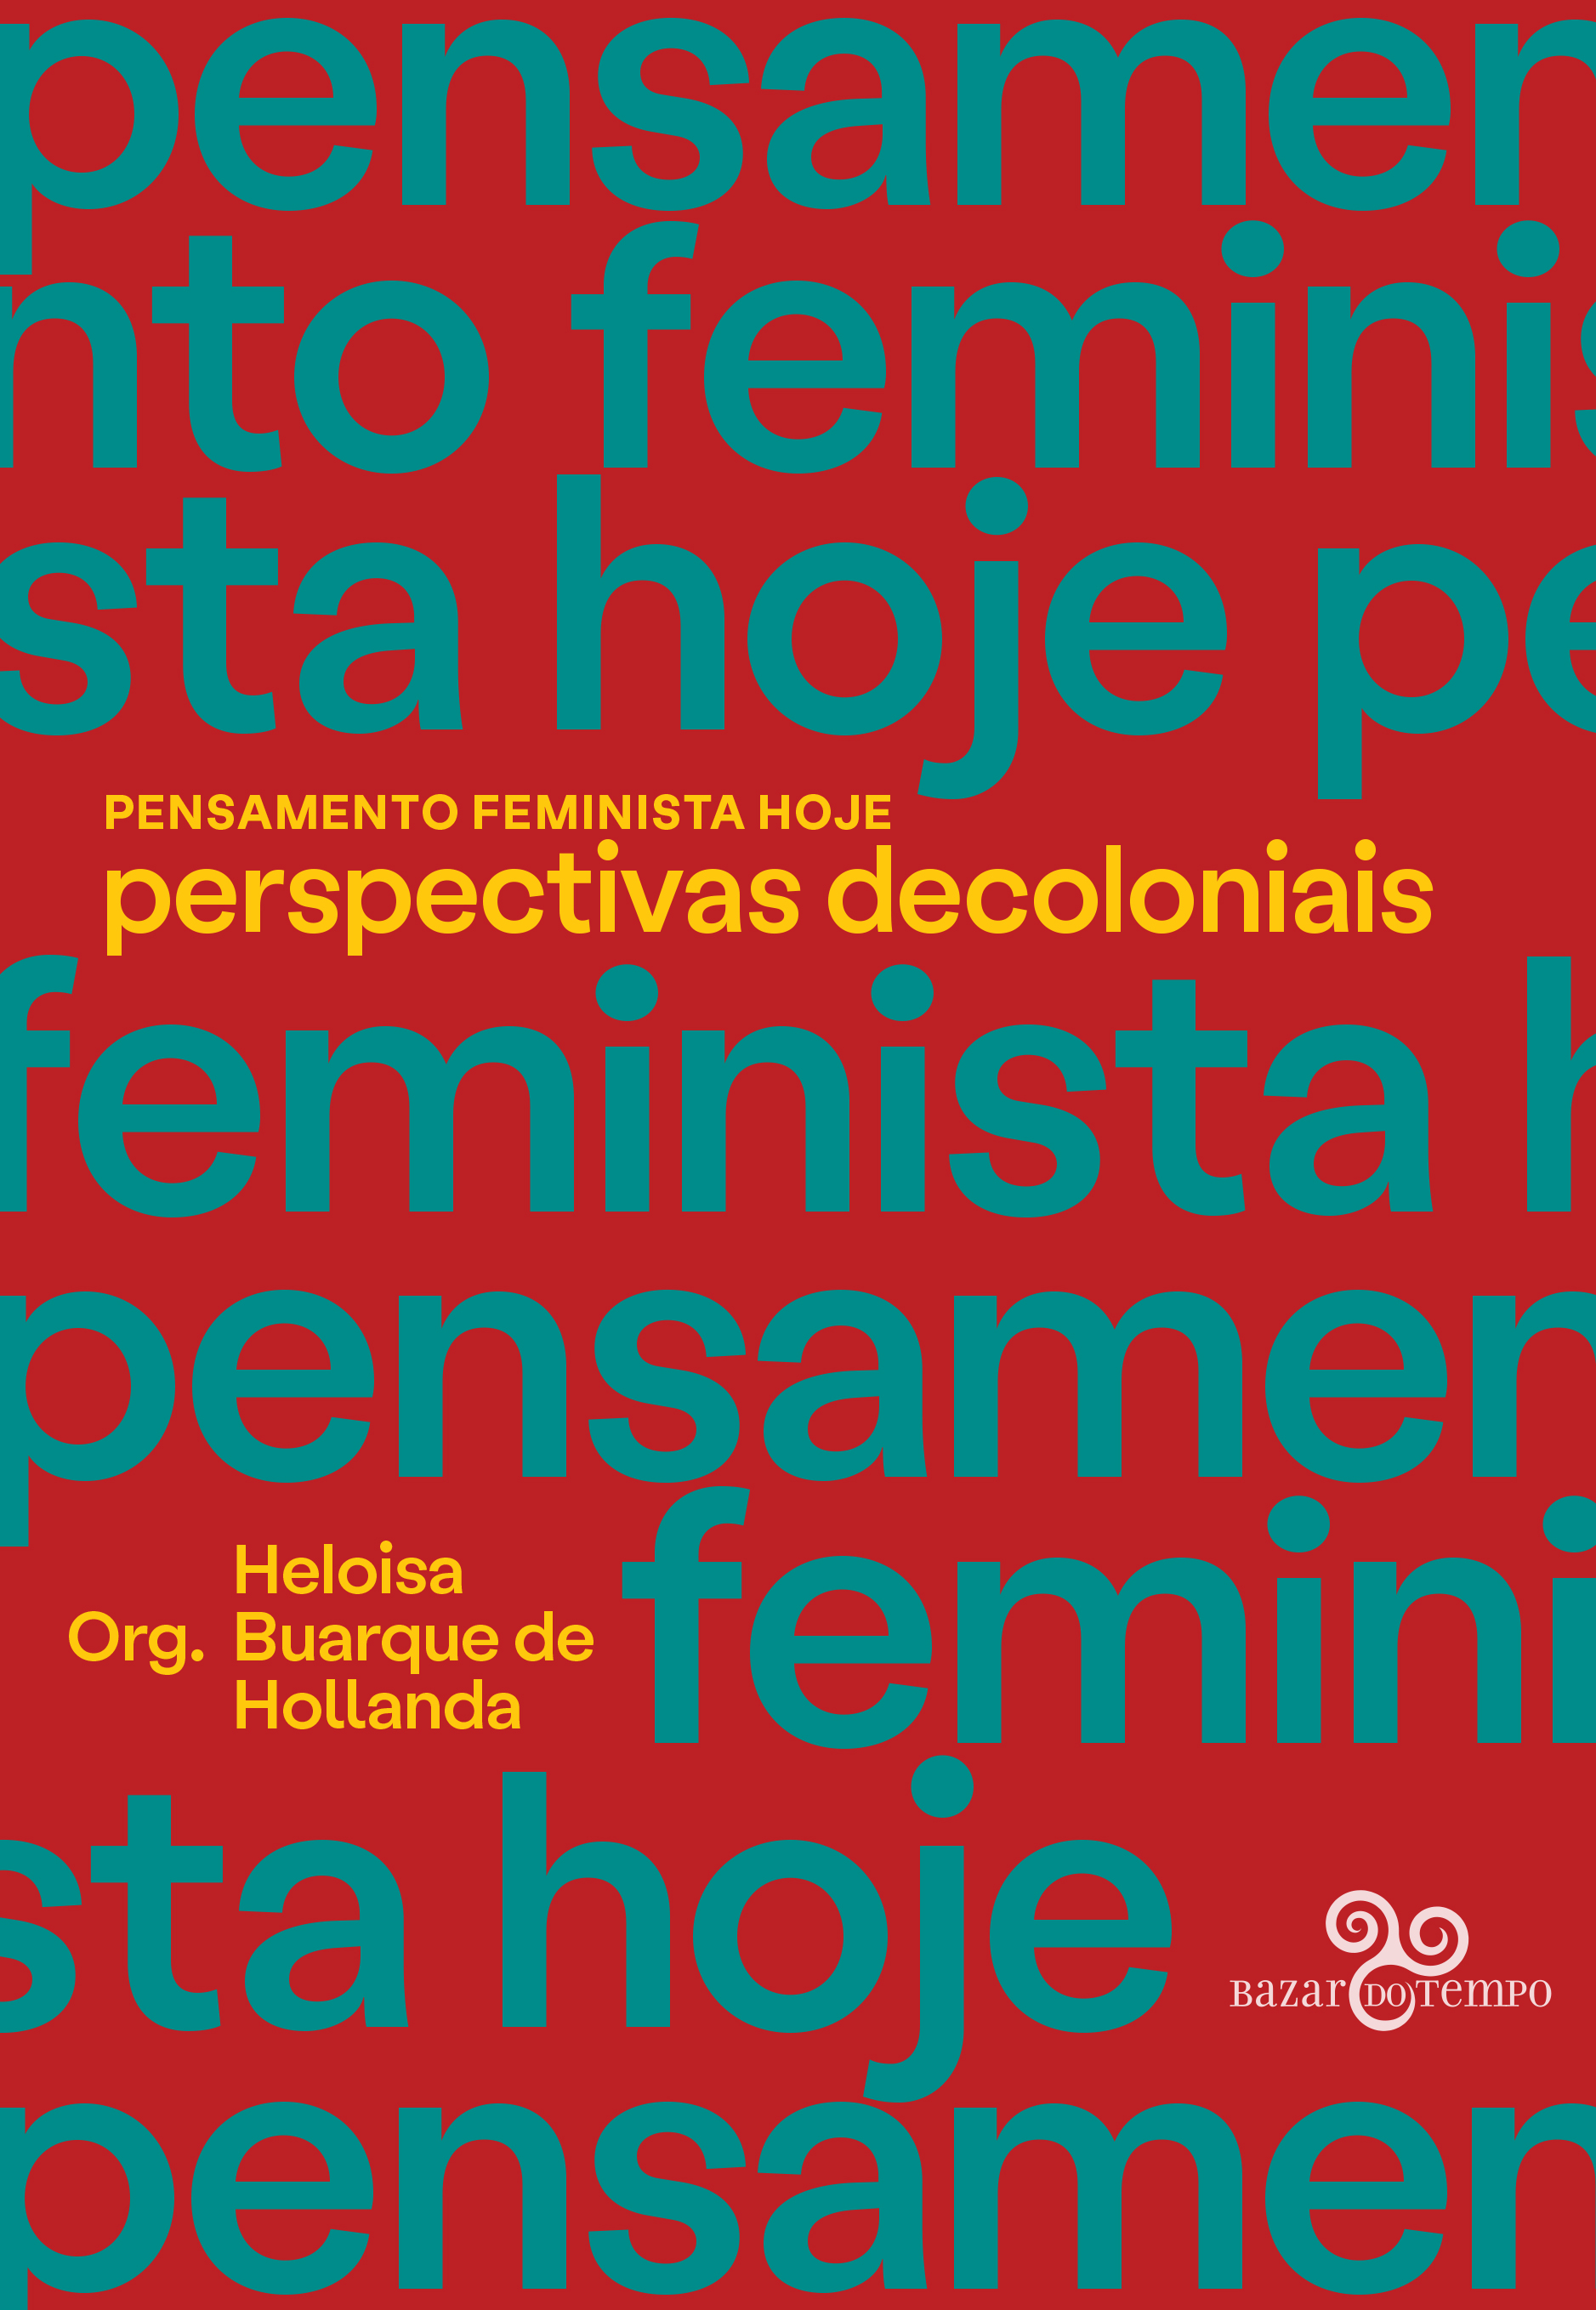 Pensamento Feminista Hoje: perspectivas decoloniais